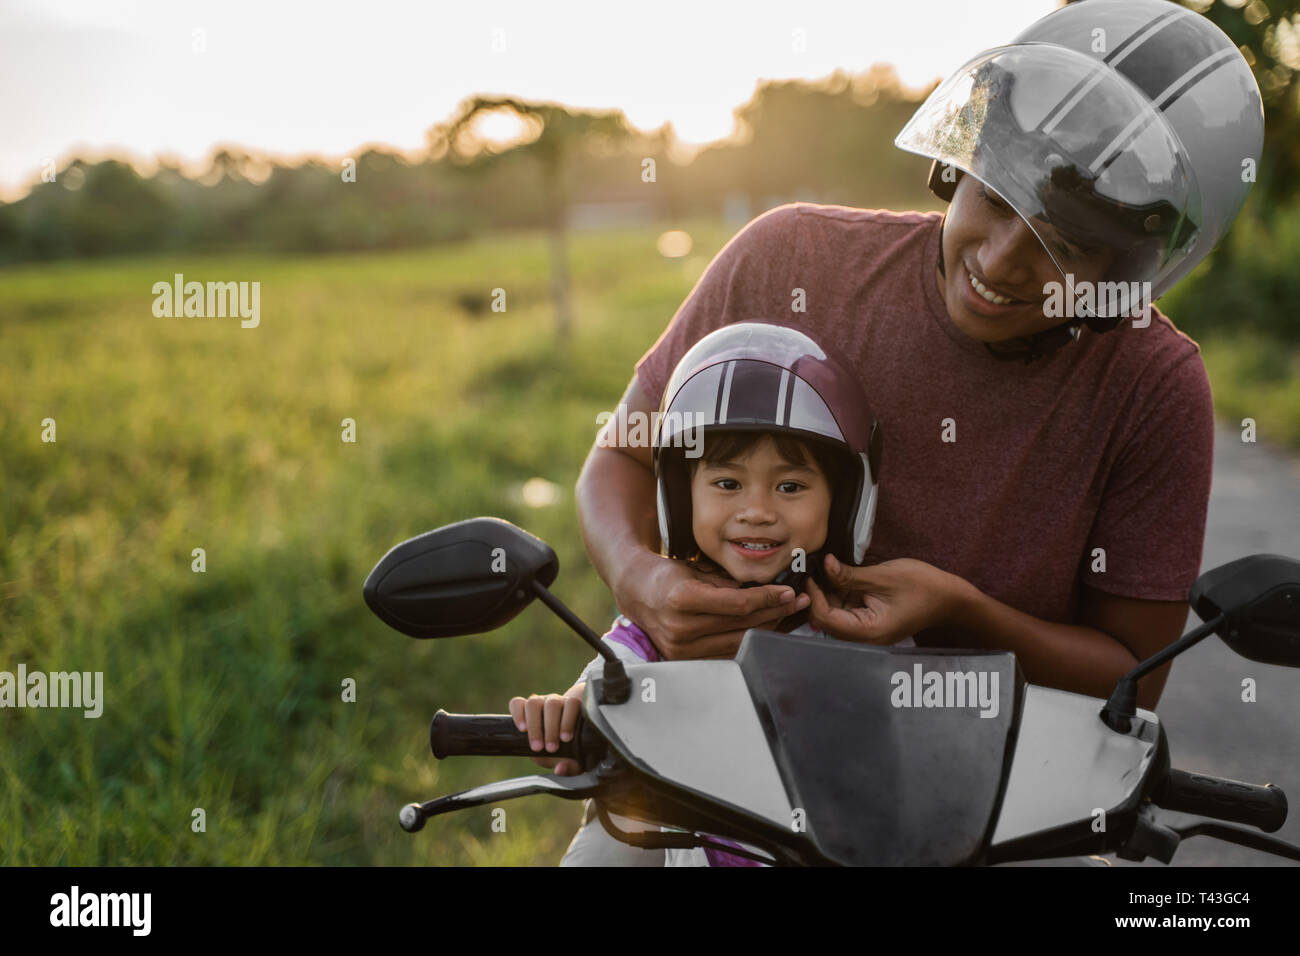 Papa helfen, ihre Tochter den Helm beim Reiten ein Motorrad Roller  befestigen Stockfotografie - Alamy